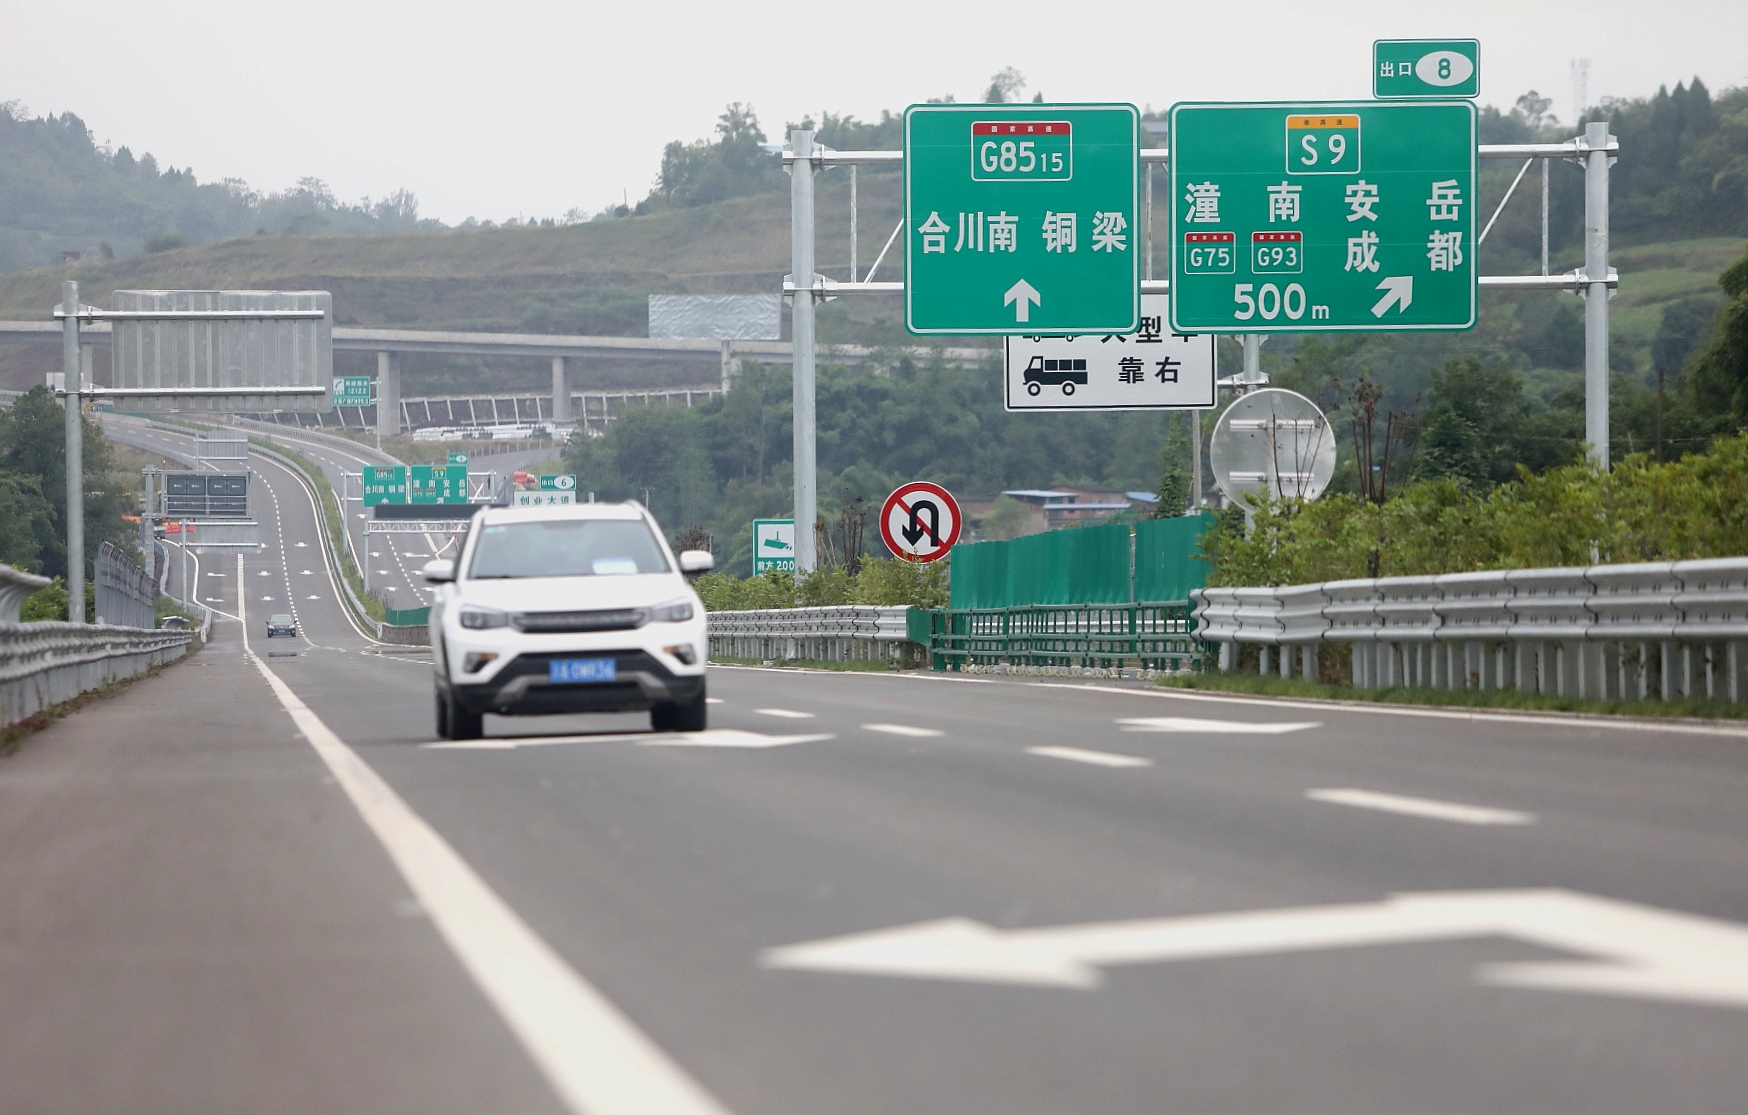 重庆高速运营里程突破3600公里中心城区及周边一小时公路通勤圈初形成